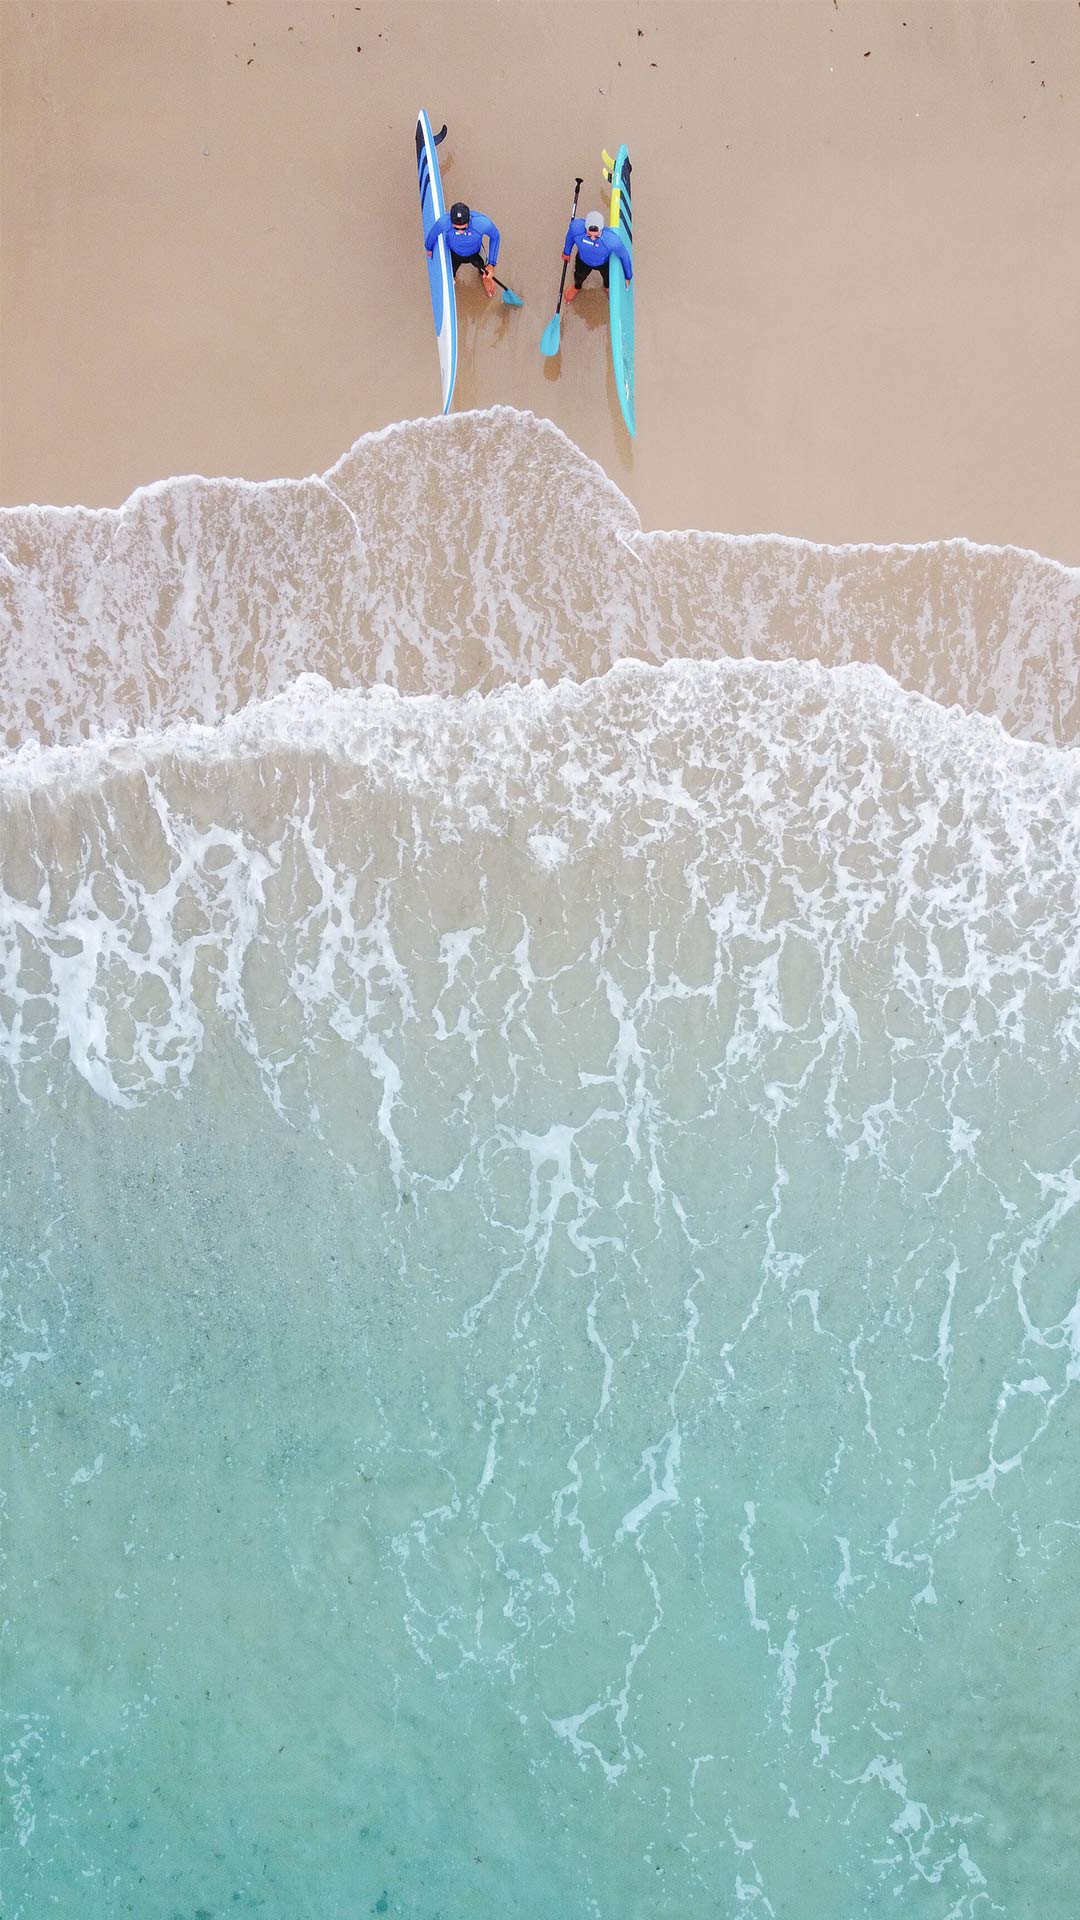 Luchtfoto van het strand van Tarifa waar twee leden van het Ion Club Tarifa team het peddelsurfmateriaal dragen waarmee ze het water ingaan om te genieten van een bijna Hawaiiaanse en ontspannen sfeer in vergelijking met Maui. 